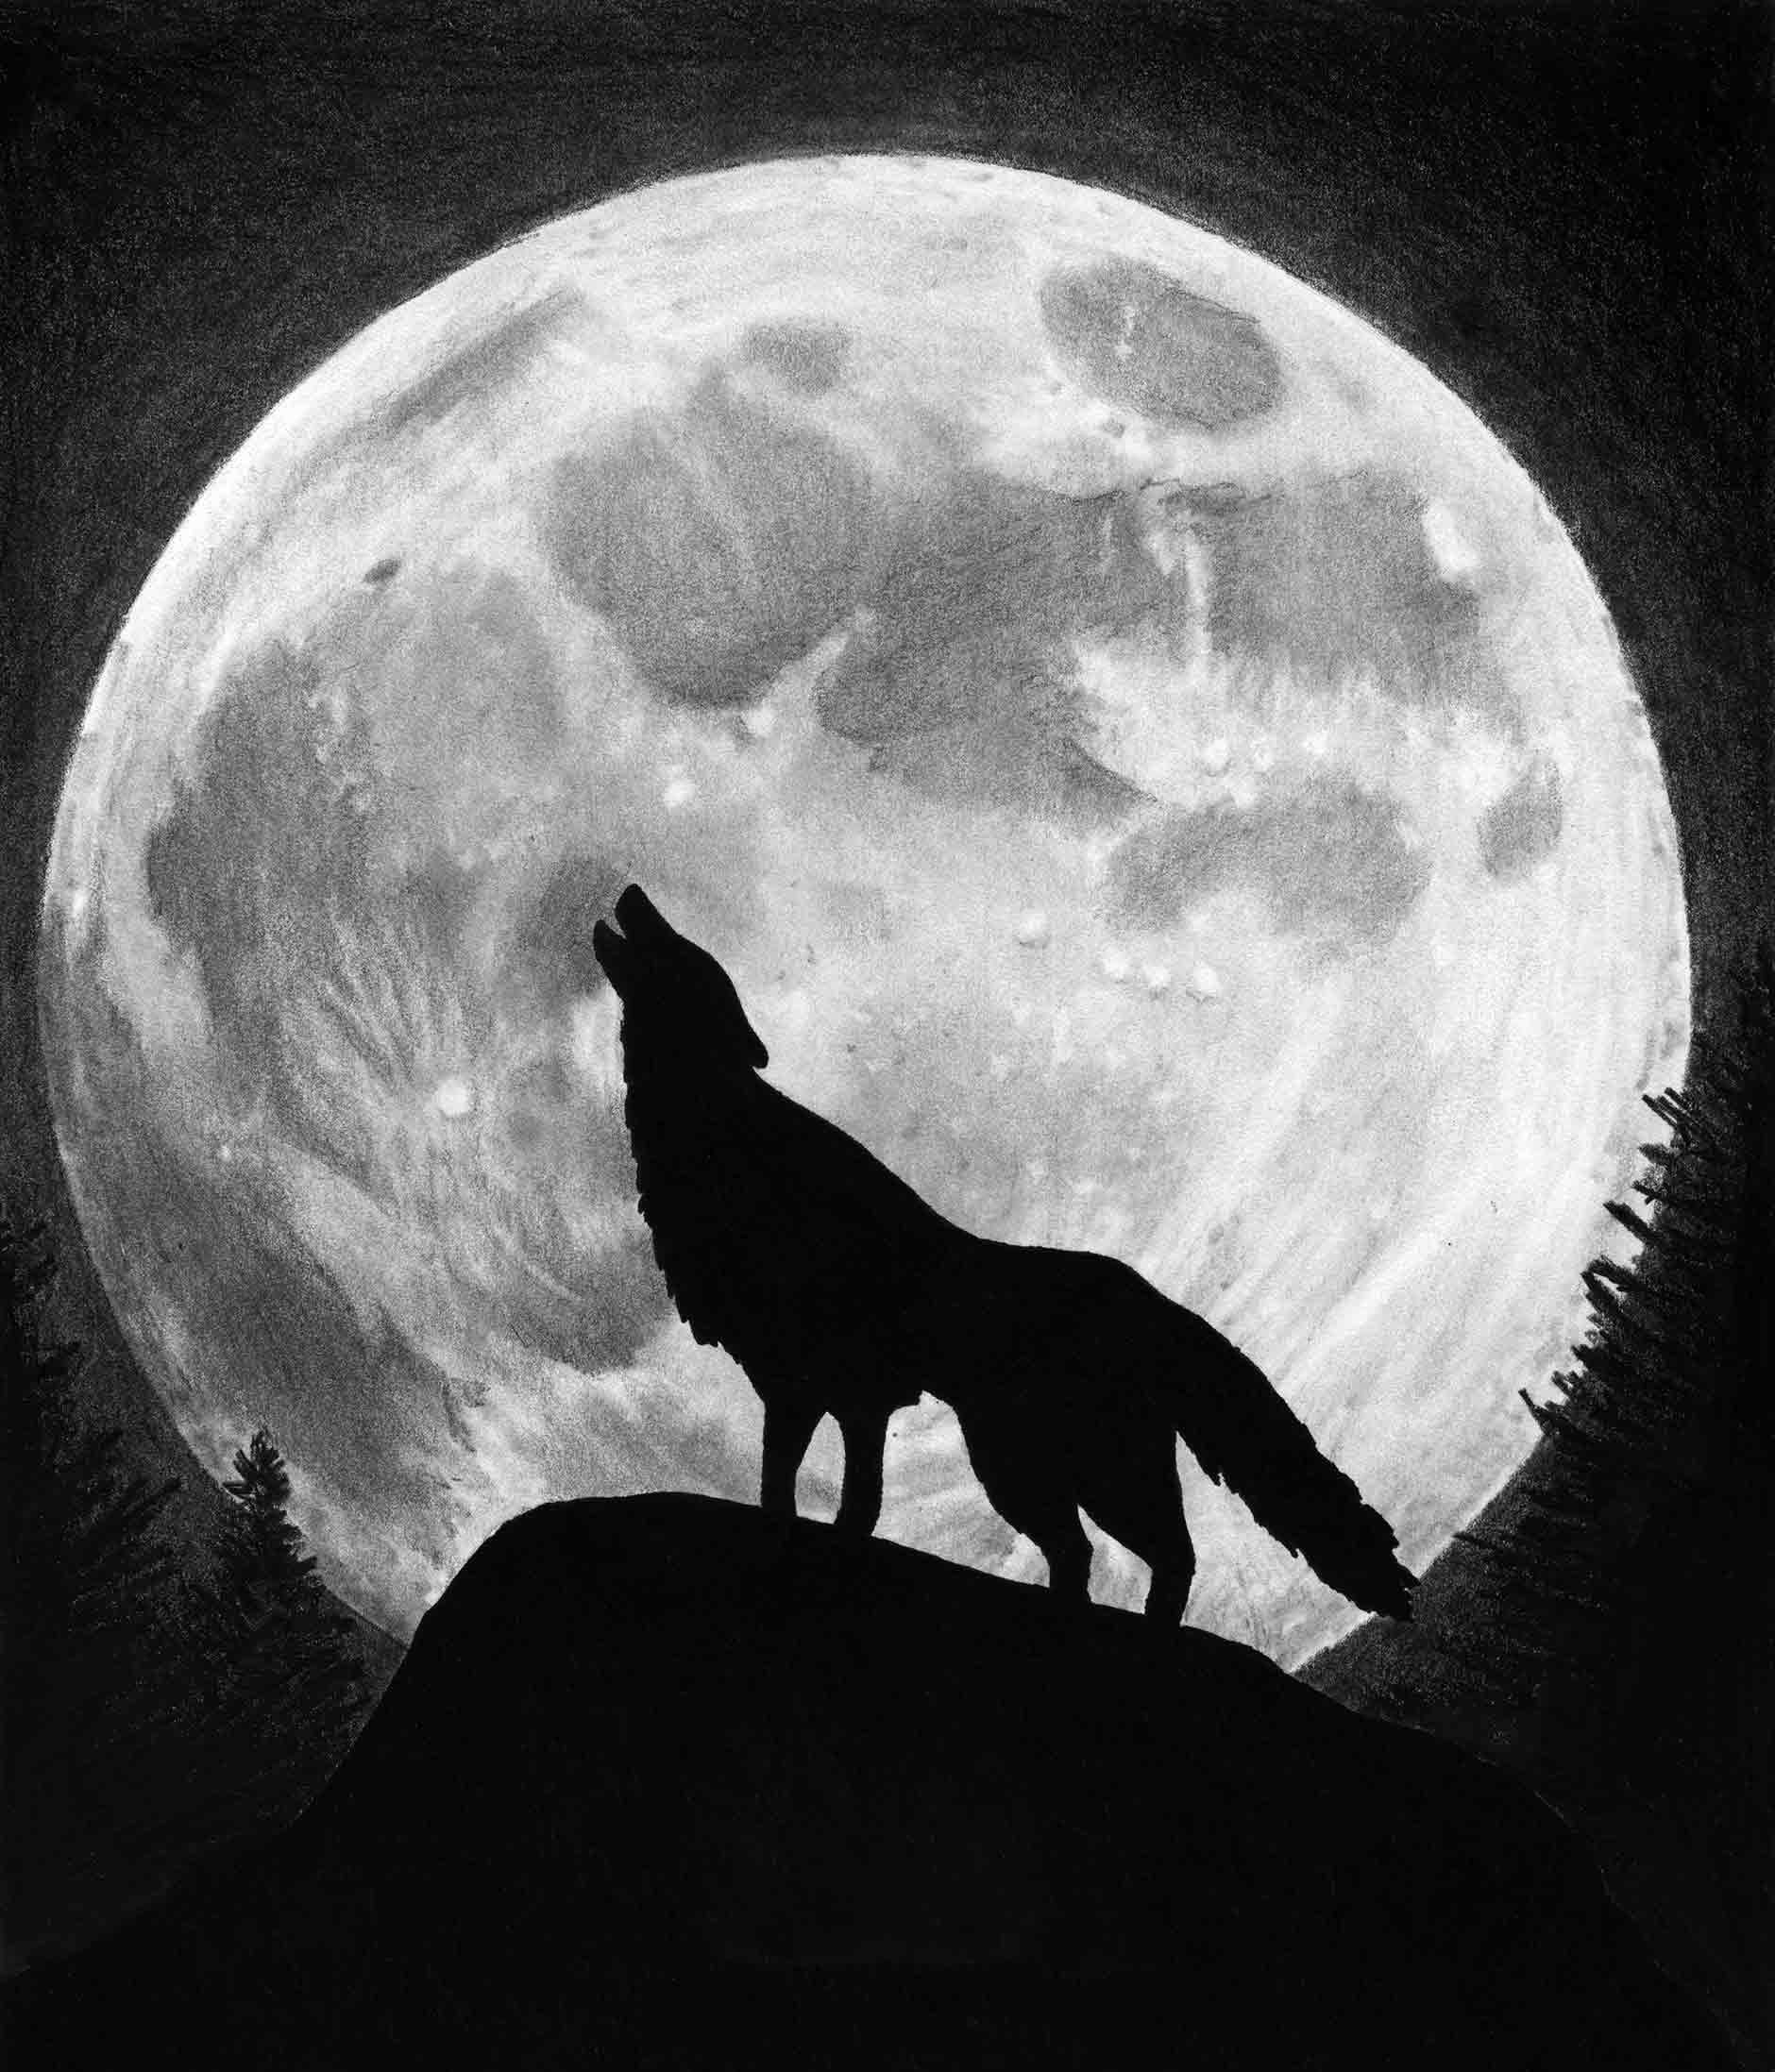 Волк воет луну Изображения – скачать бесплатно на Freepik